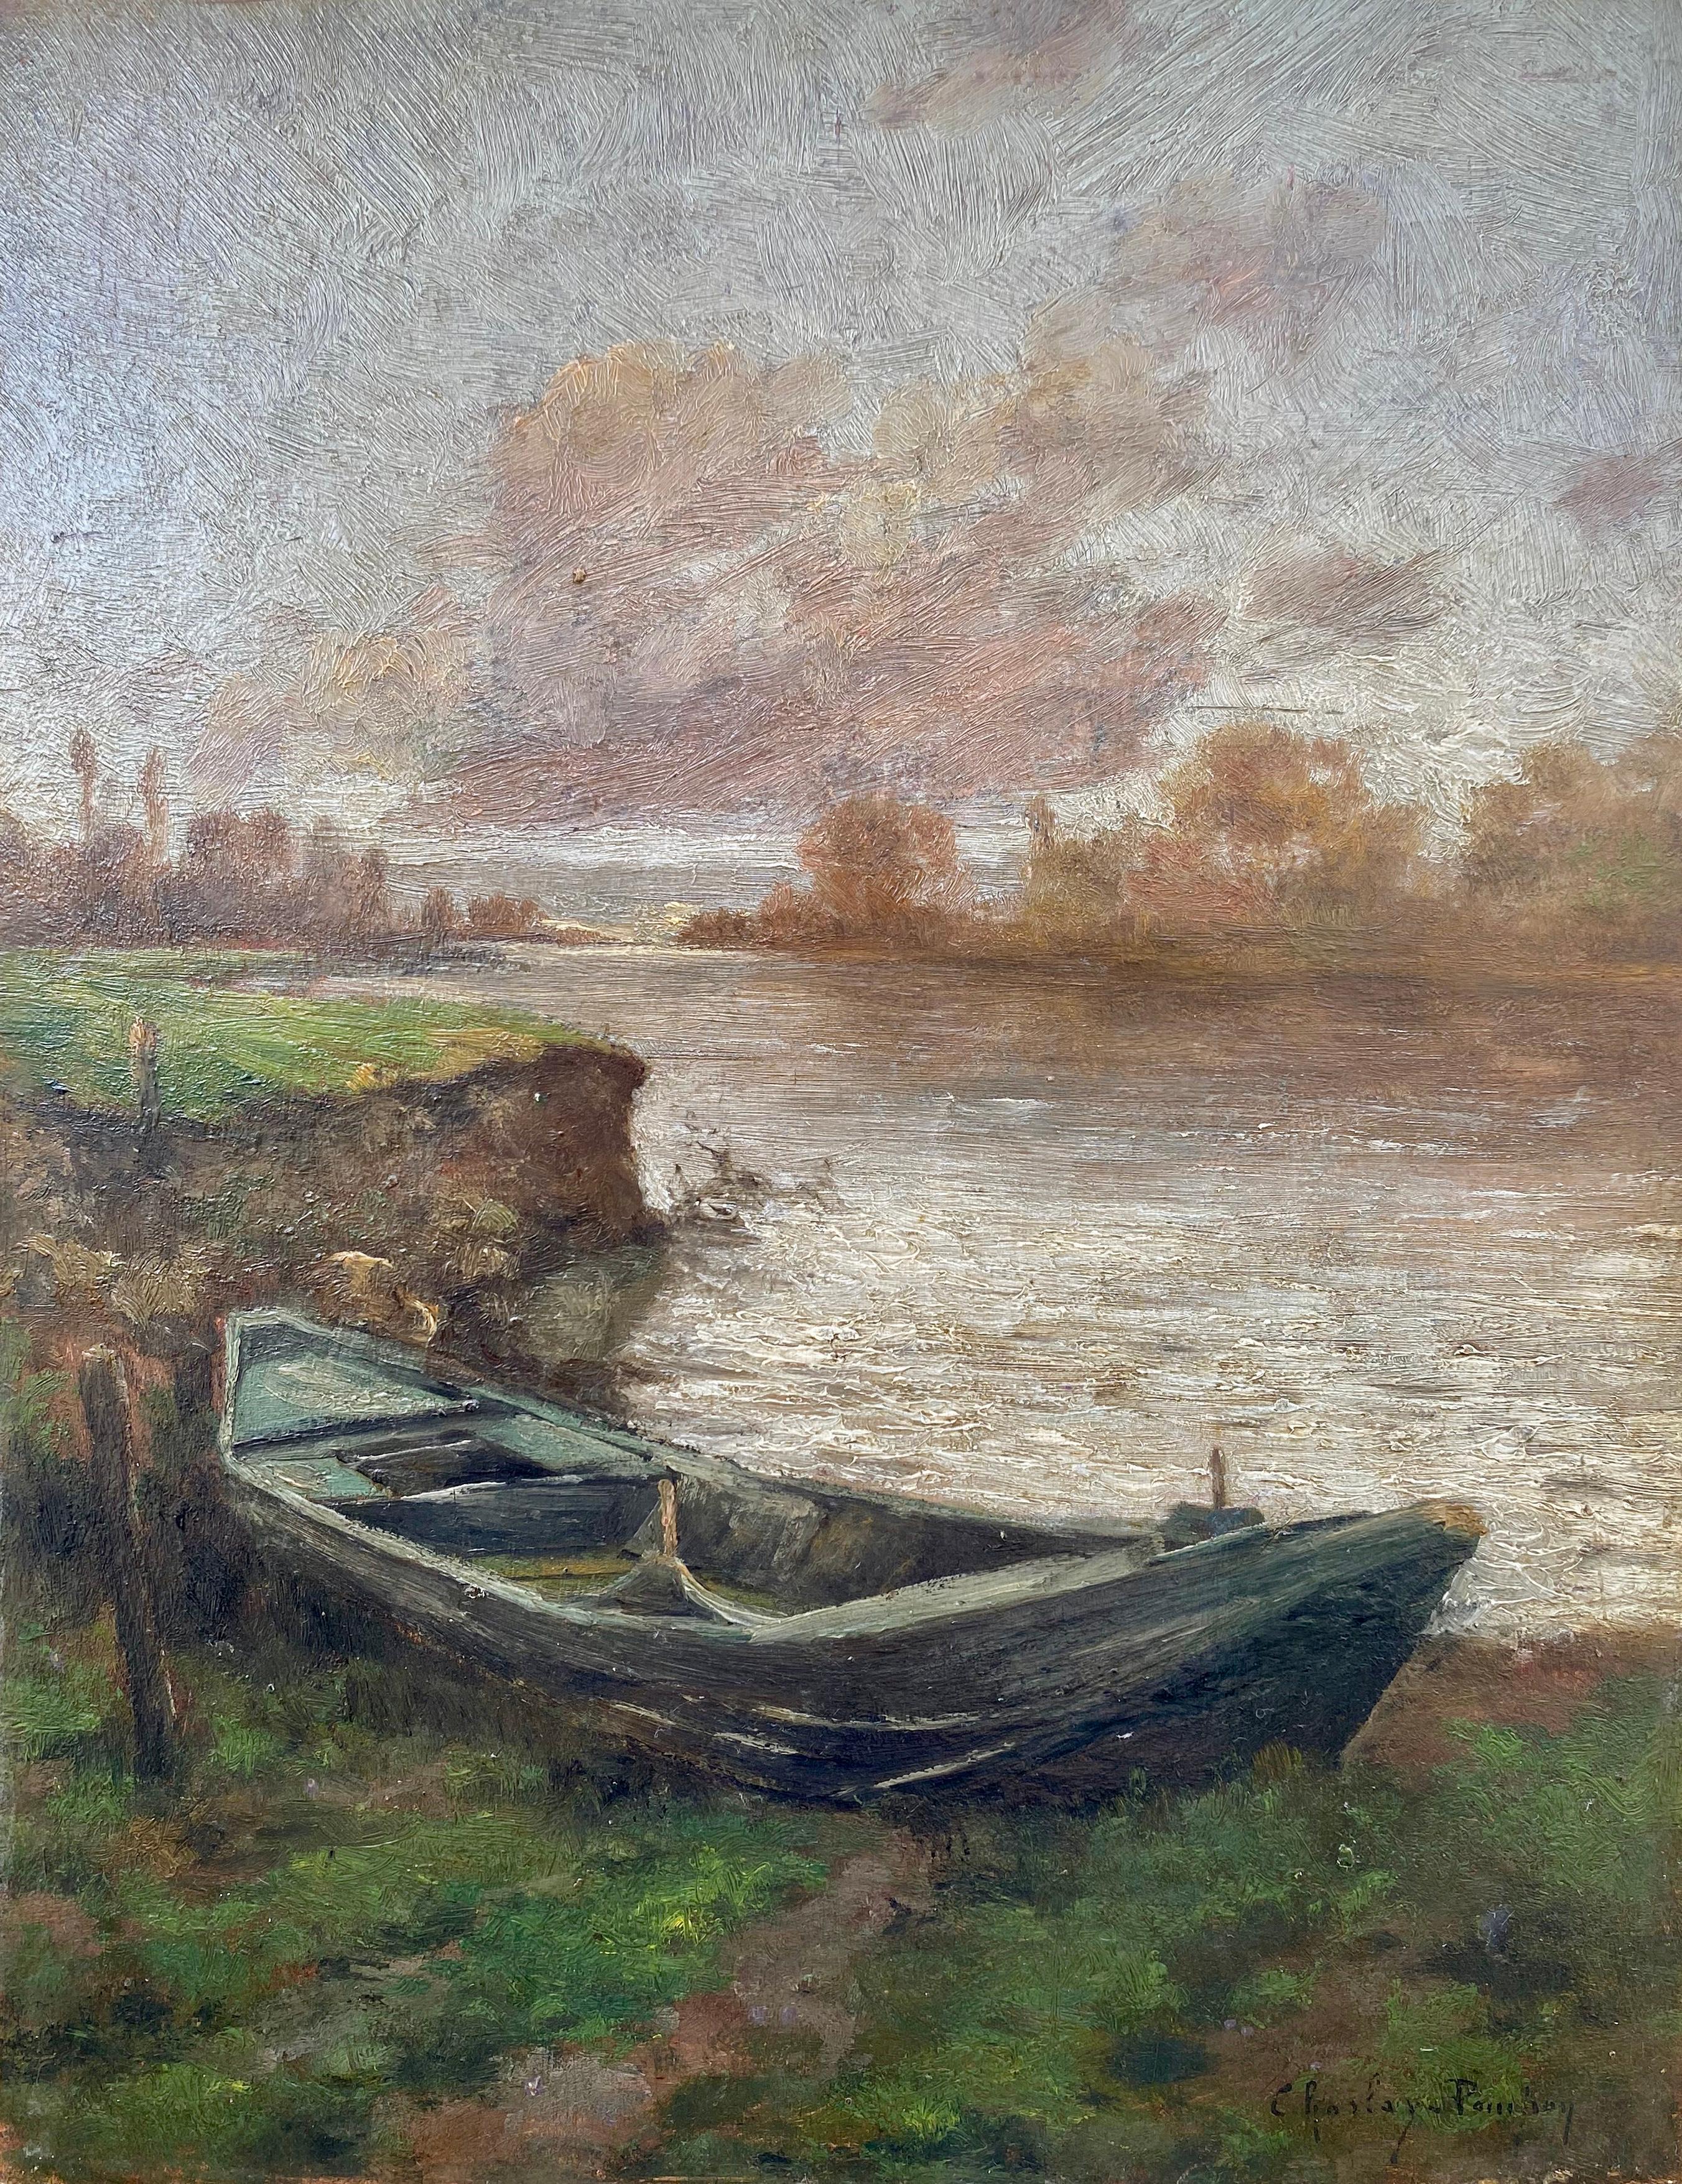 Nach dem Sturm, der blaue Kanus: Impressionistische Pleinair-F Flussssszene – Painting von Charles Charlay-Pompon